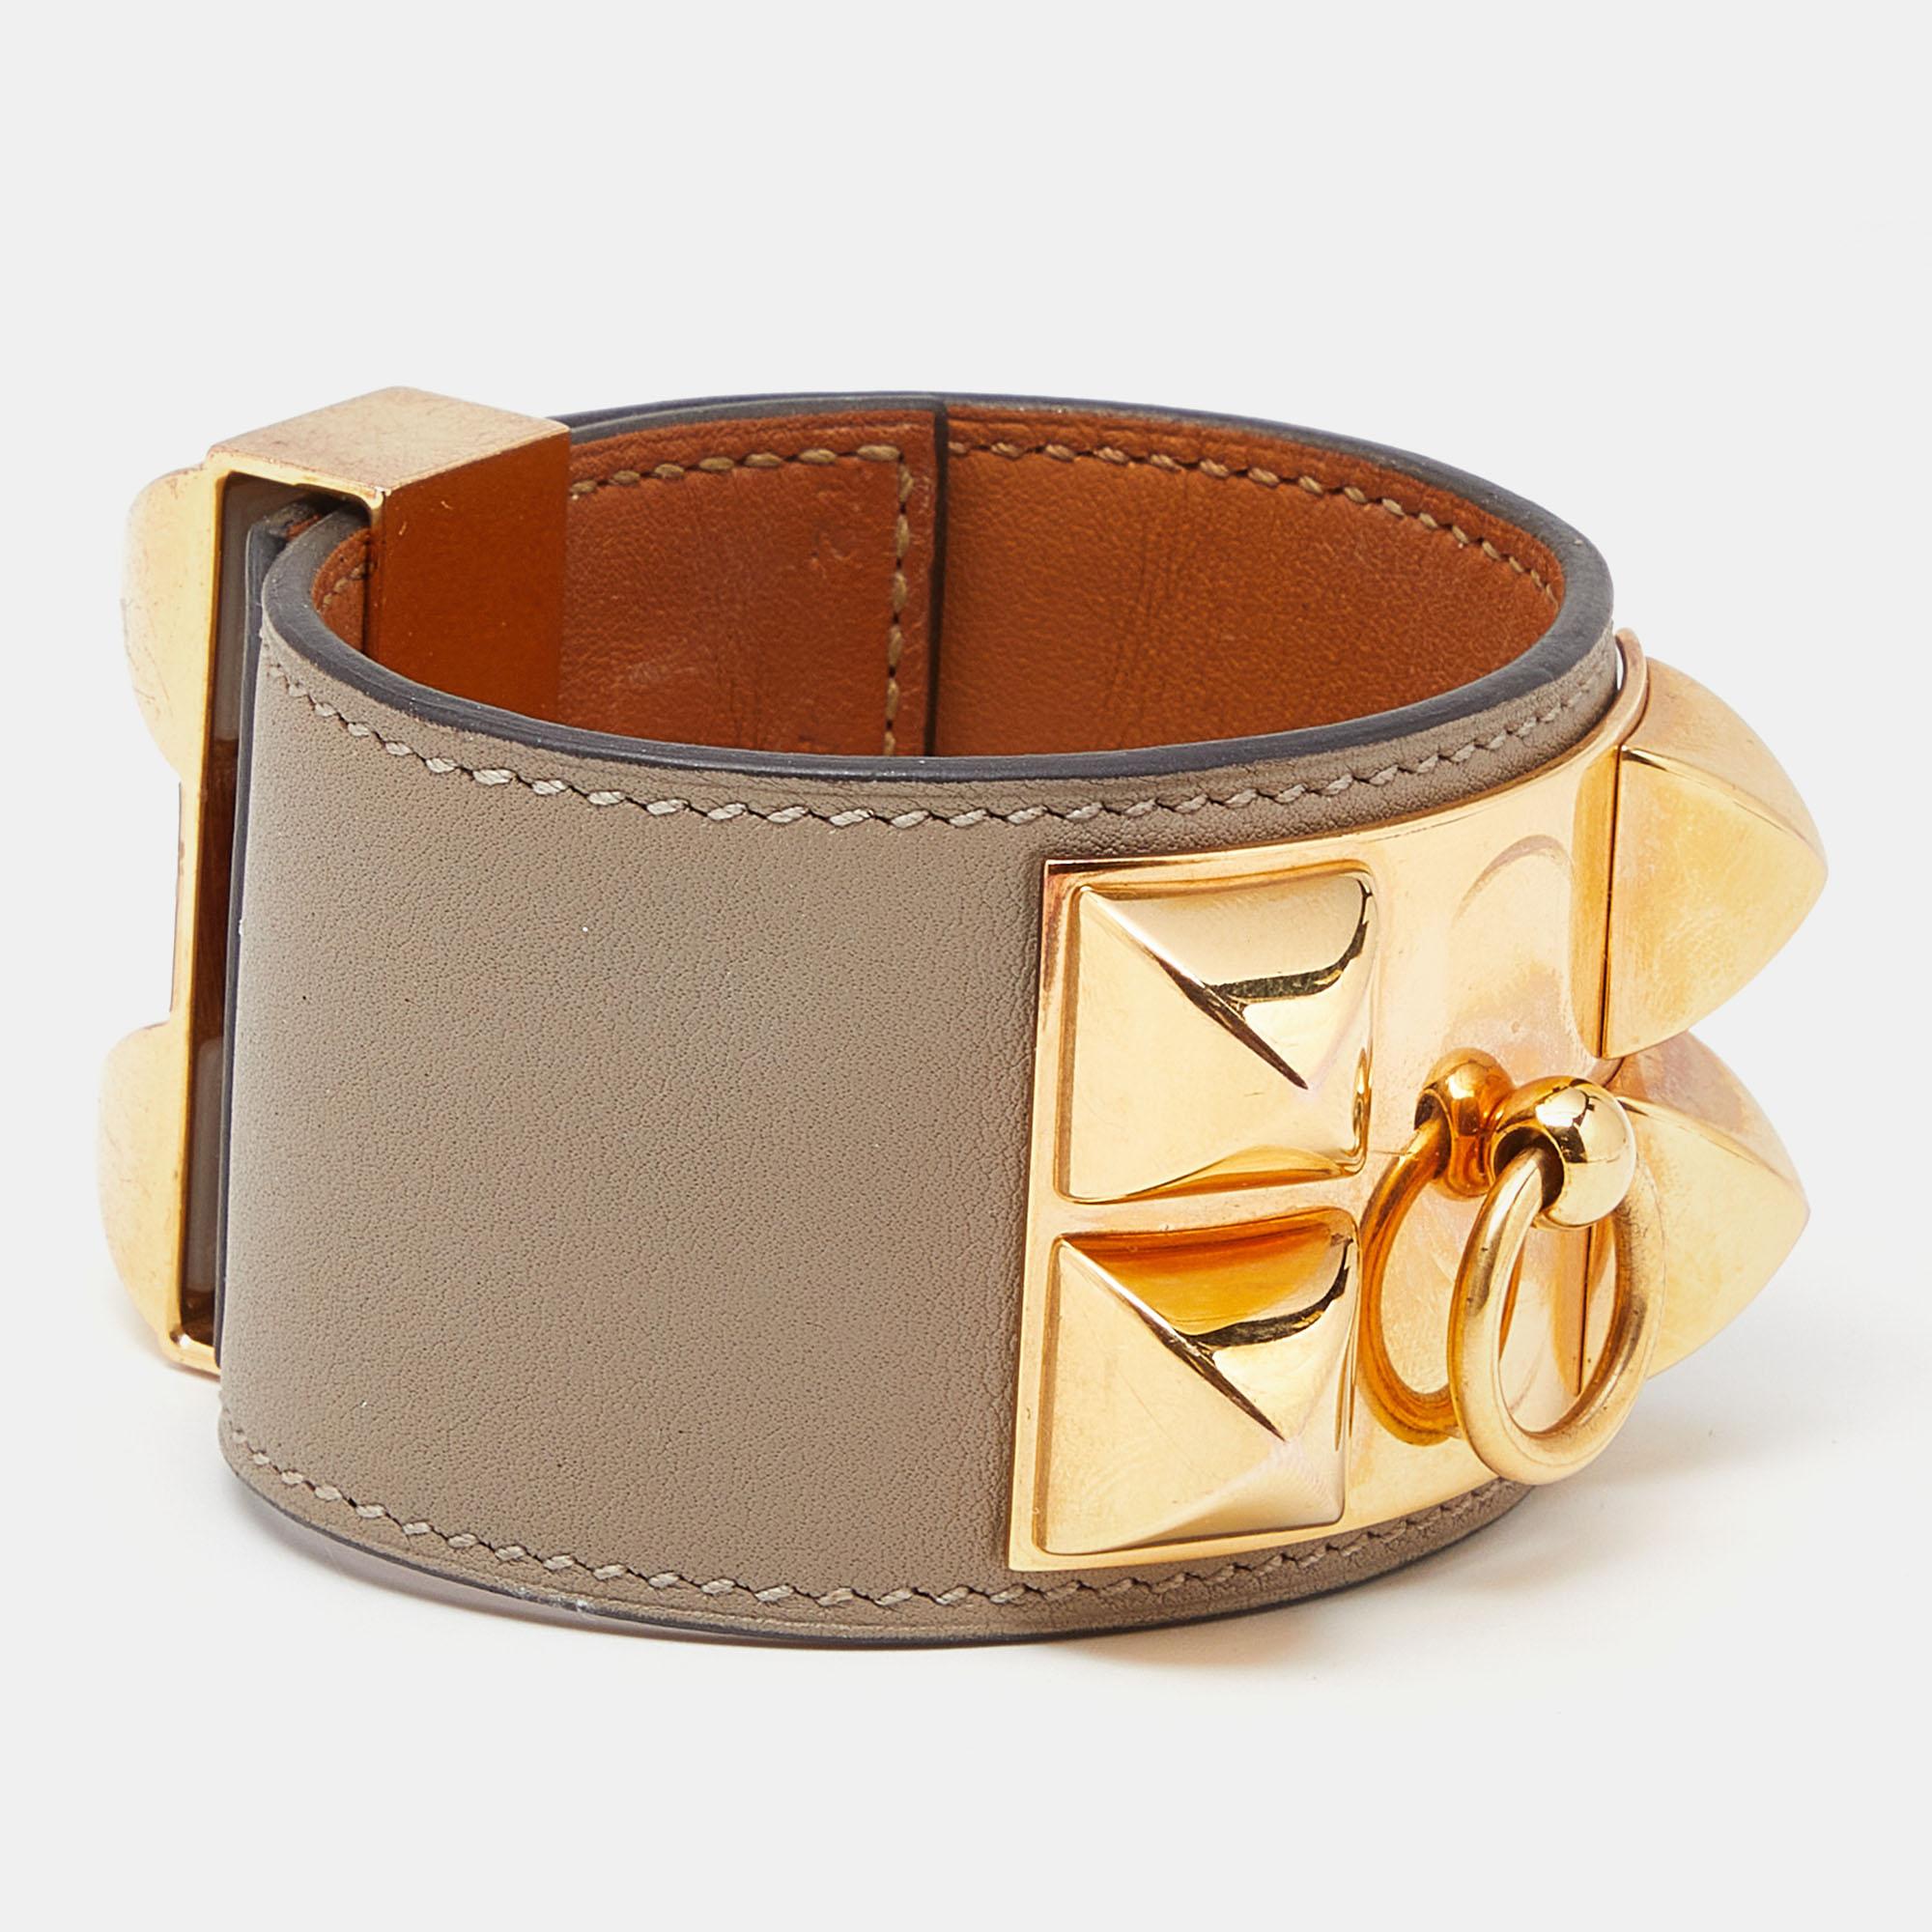 Ajoutez la magie d'Hermès à votre façon d'accessoiriser avec ce bracelet. Ce bracelet en cuir est stylisé avec des lignes fines et du métal doré. Souligné par des détails signature, il ne manquera pas d'ajouter un charme luxueux à votre ensemble.

